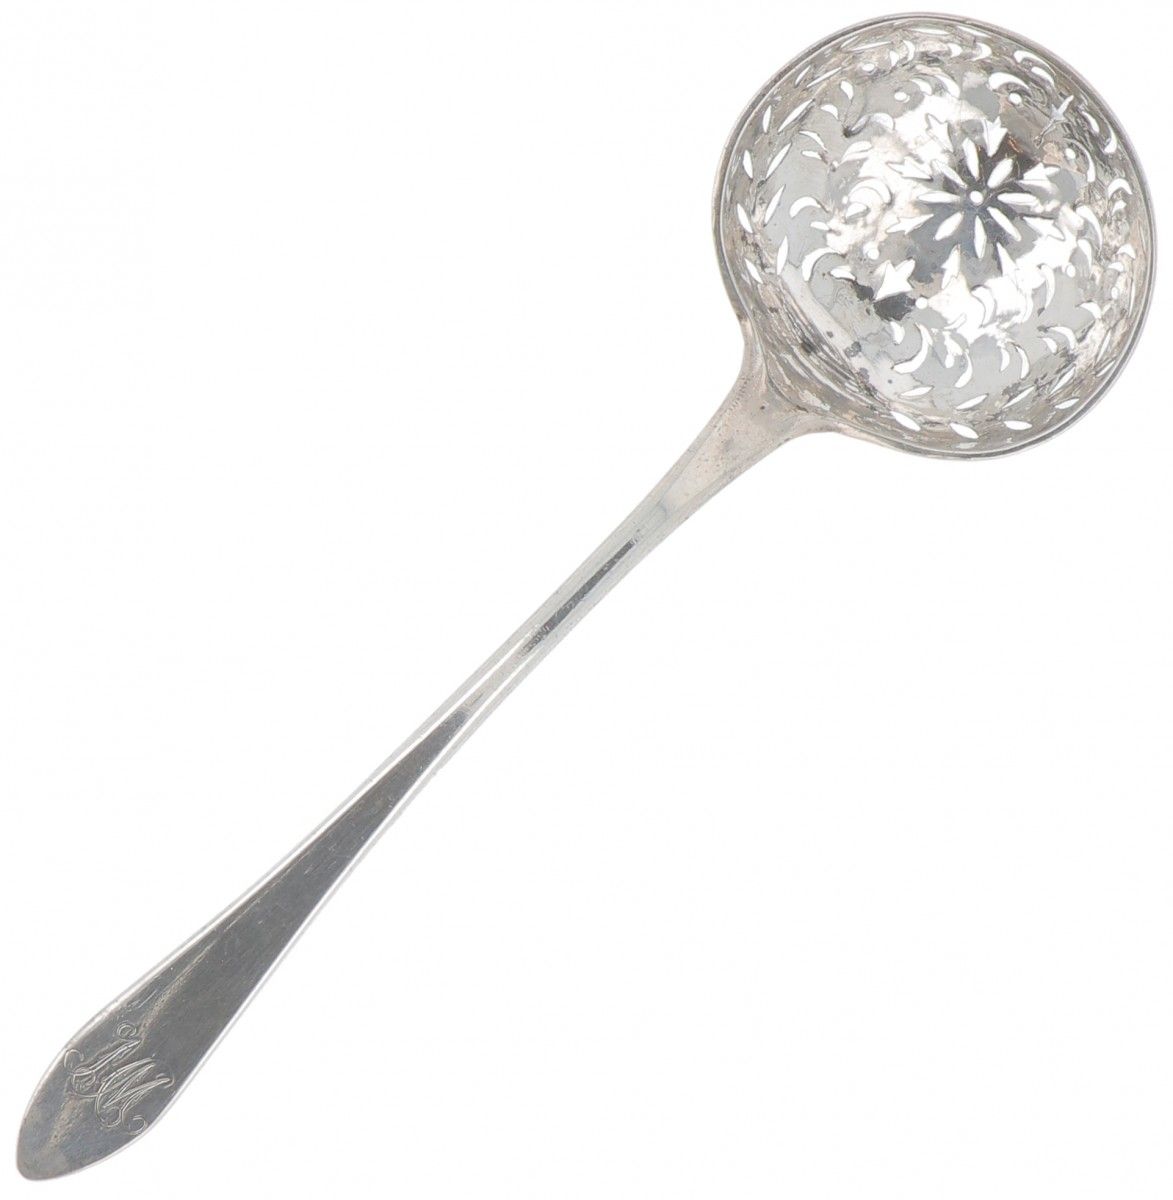 Sprinkler spoon silver. Schlankes Modell mit schöner durchbrochener Schaufel. Fr&hellip;